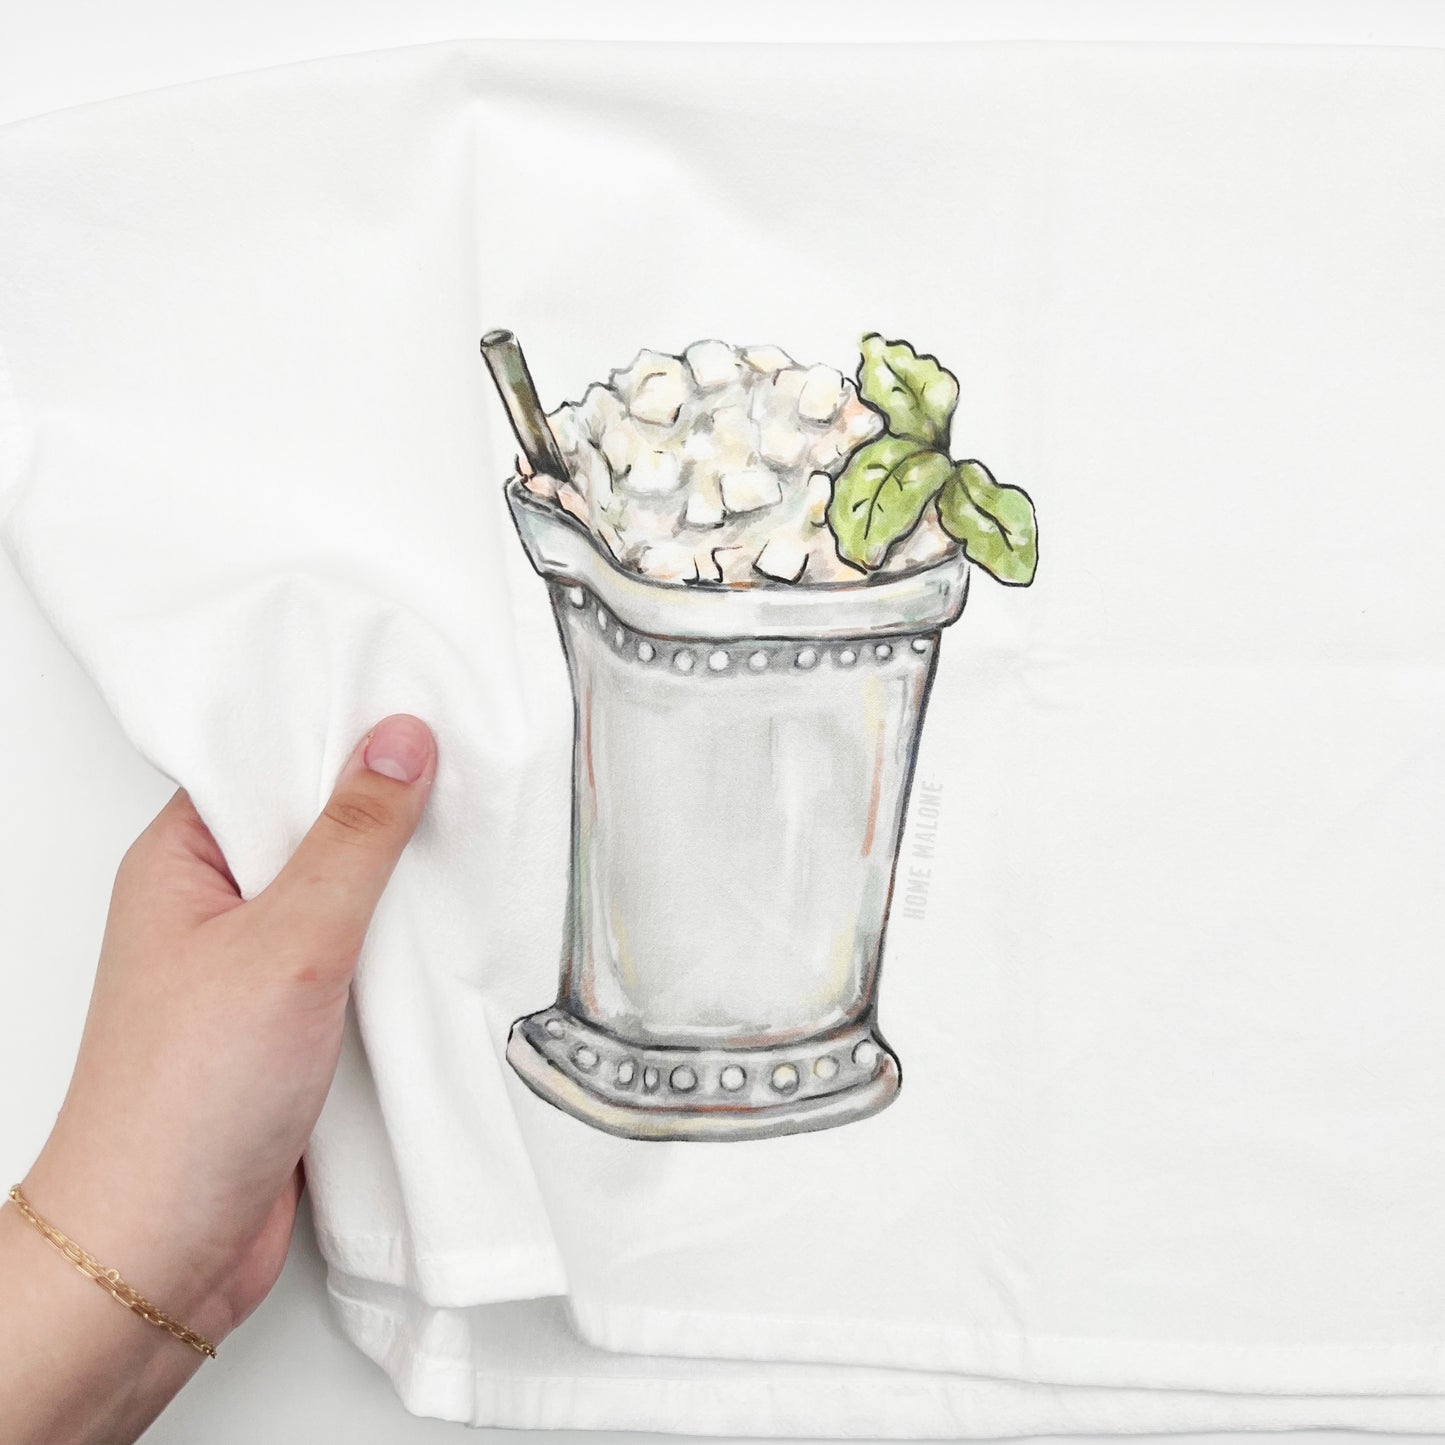 Mint Julep Towel - Derby Summer Cocktail Kitchen Decor